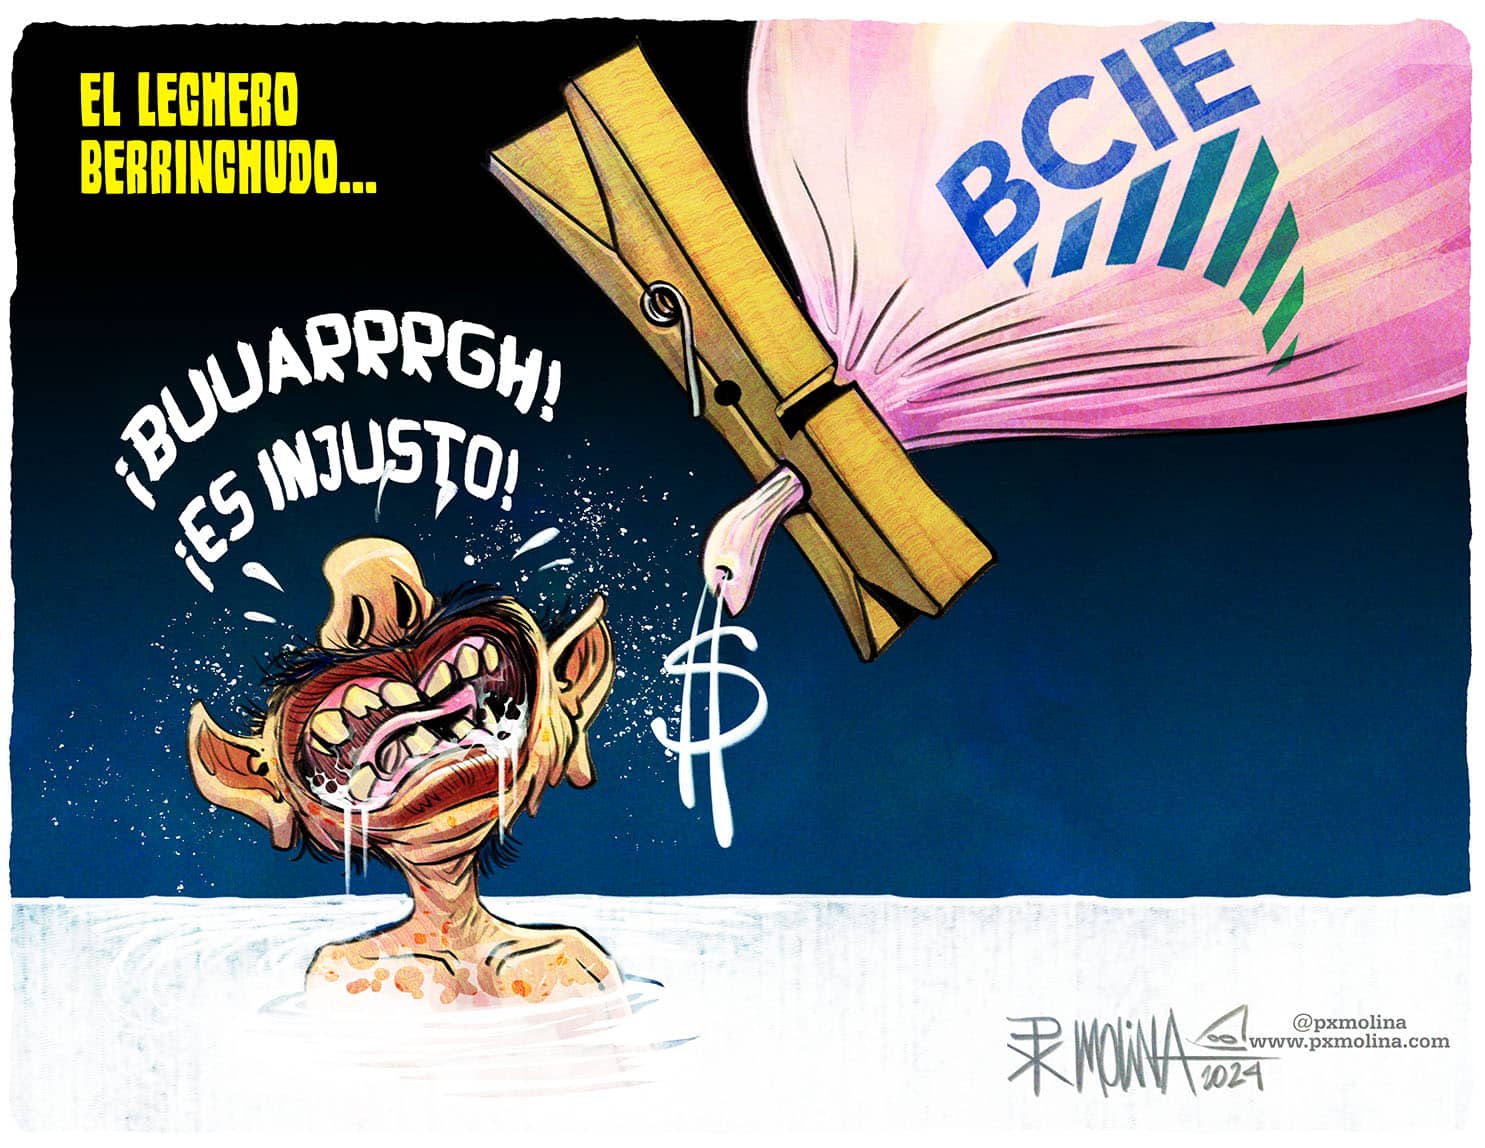 Daniel Ortega lechero berrinchudo